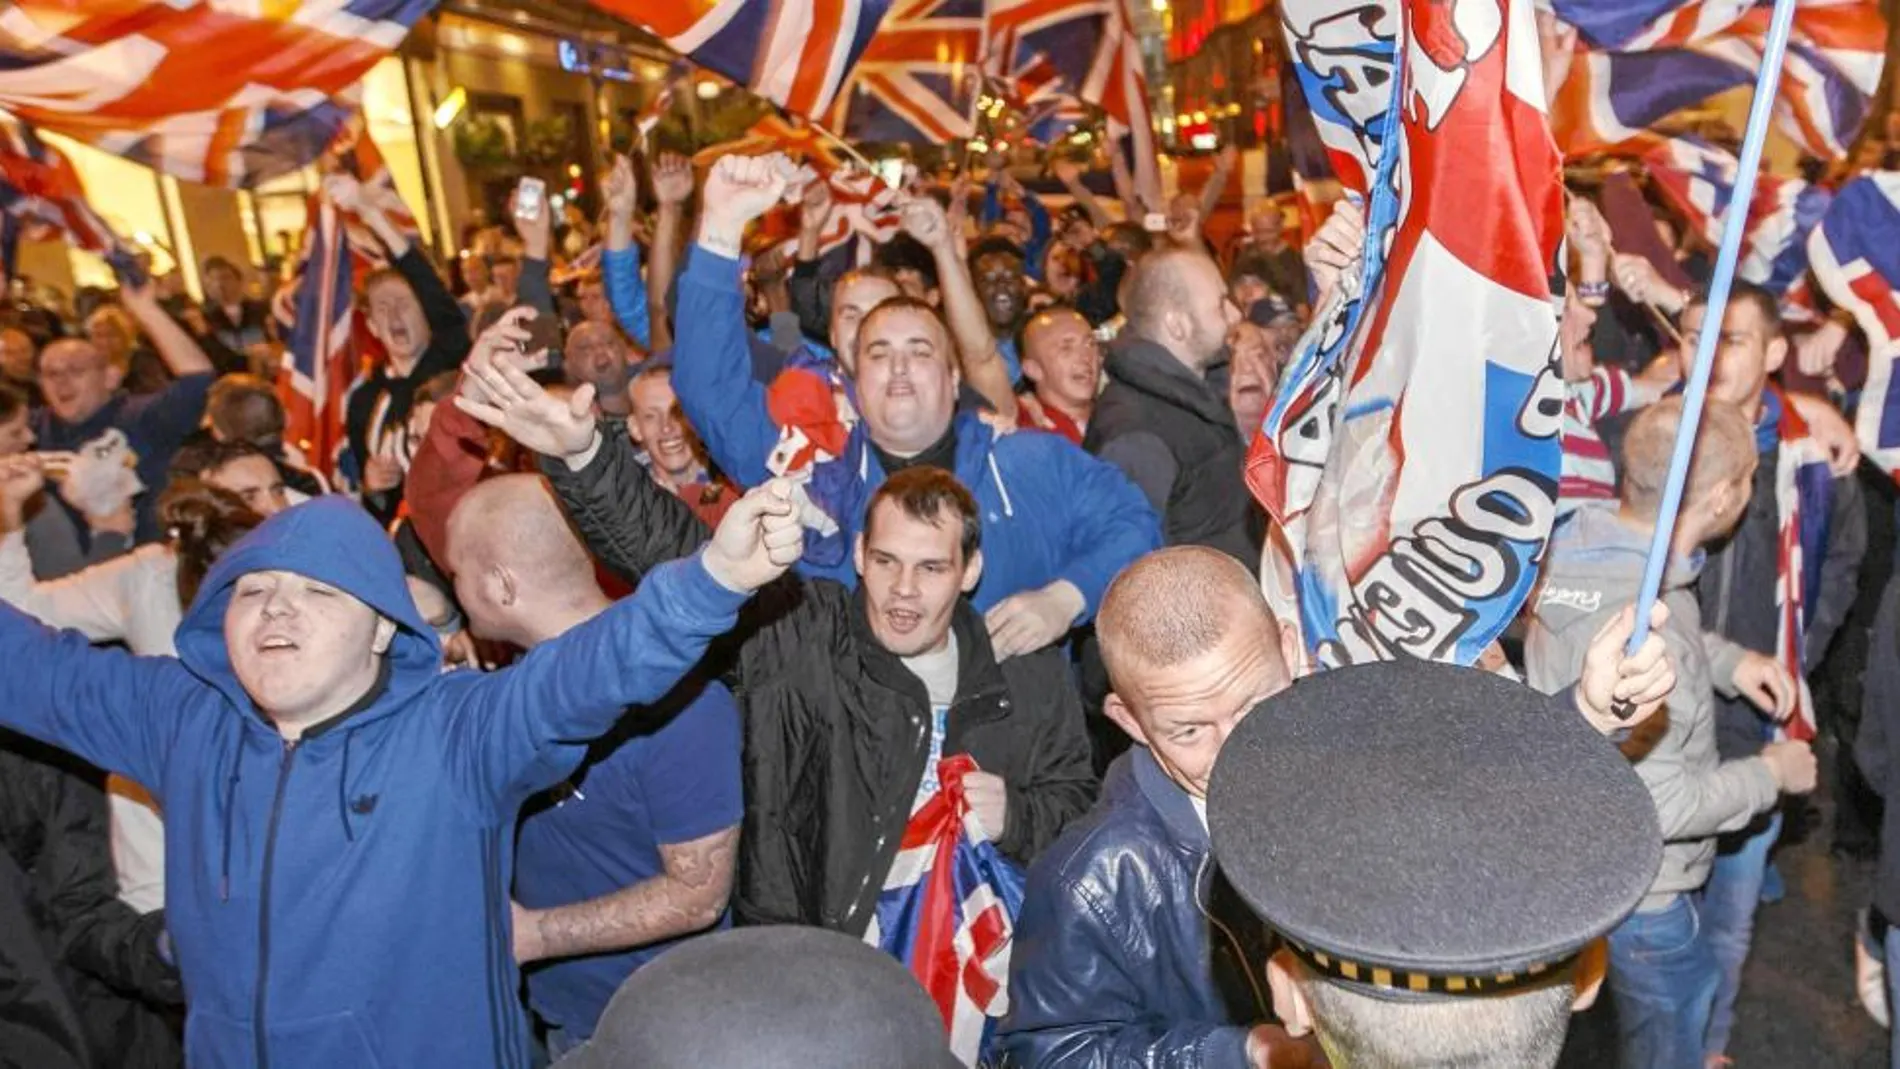 Glasgow fue escenario de enfrentamientos entre unionistas y separatisas